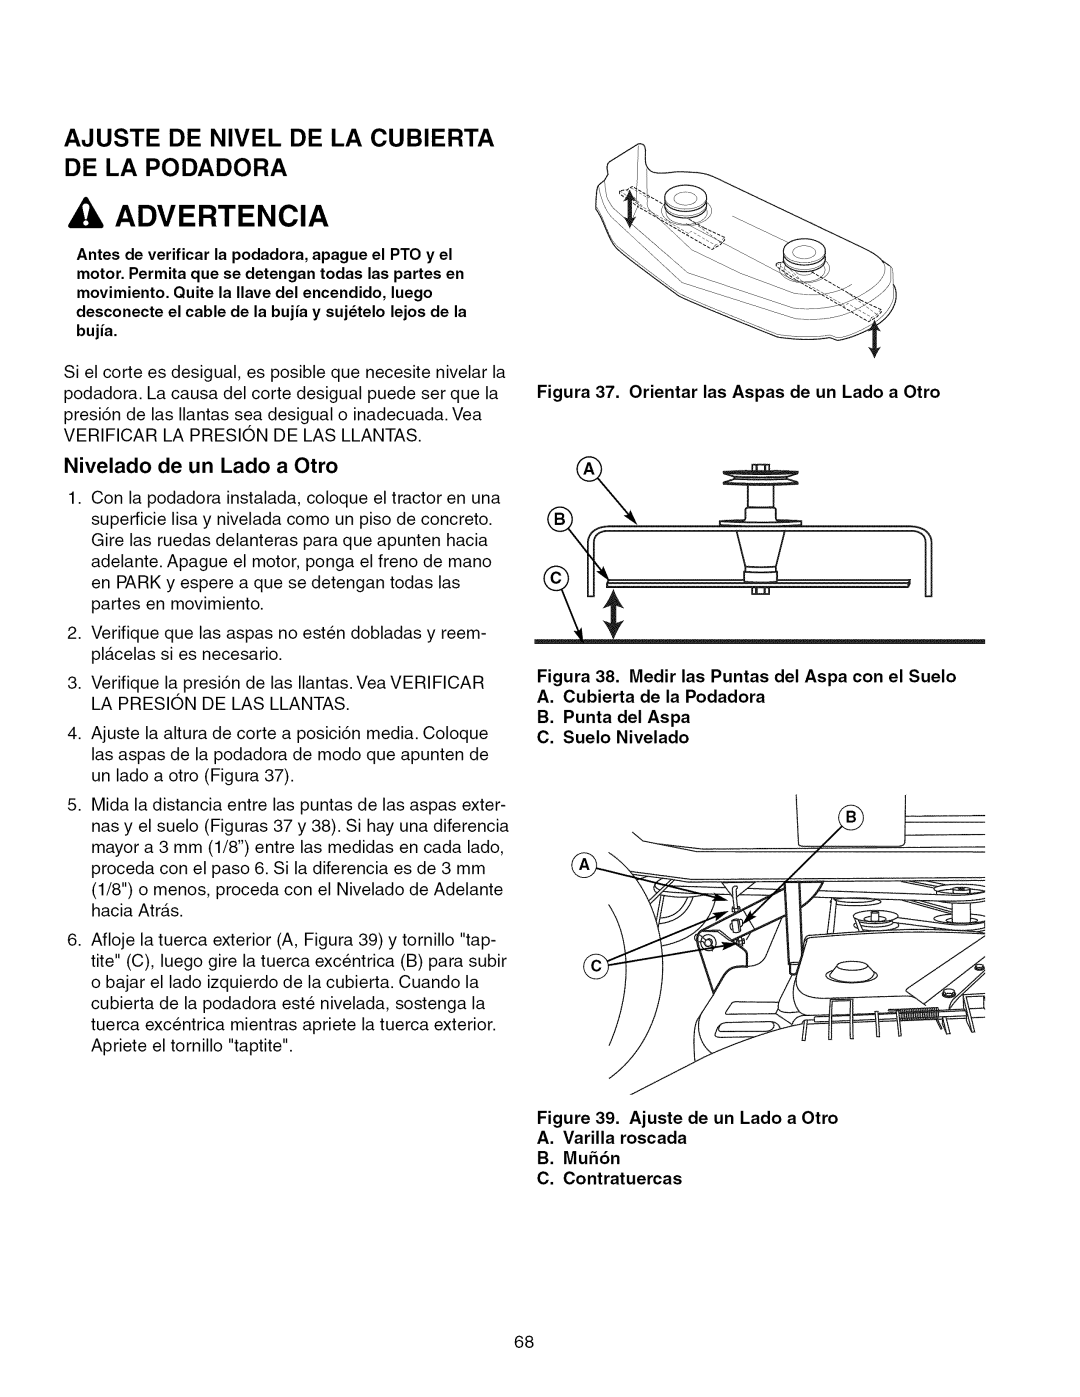 Craftsman 28986 manual Ajuste De Nivel De La Cubierta De La Podadora, Nivelado de un Lado a Otro, Ajuste de un Lado a Otro 